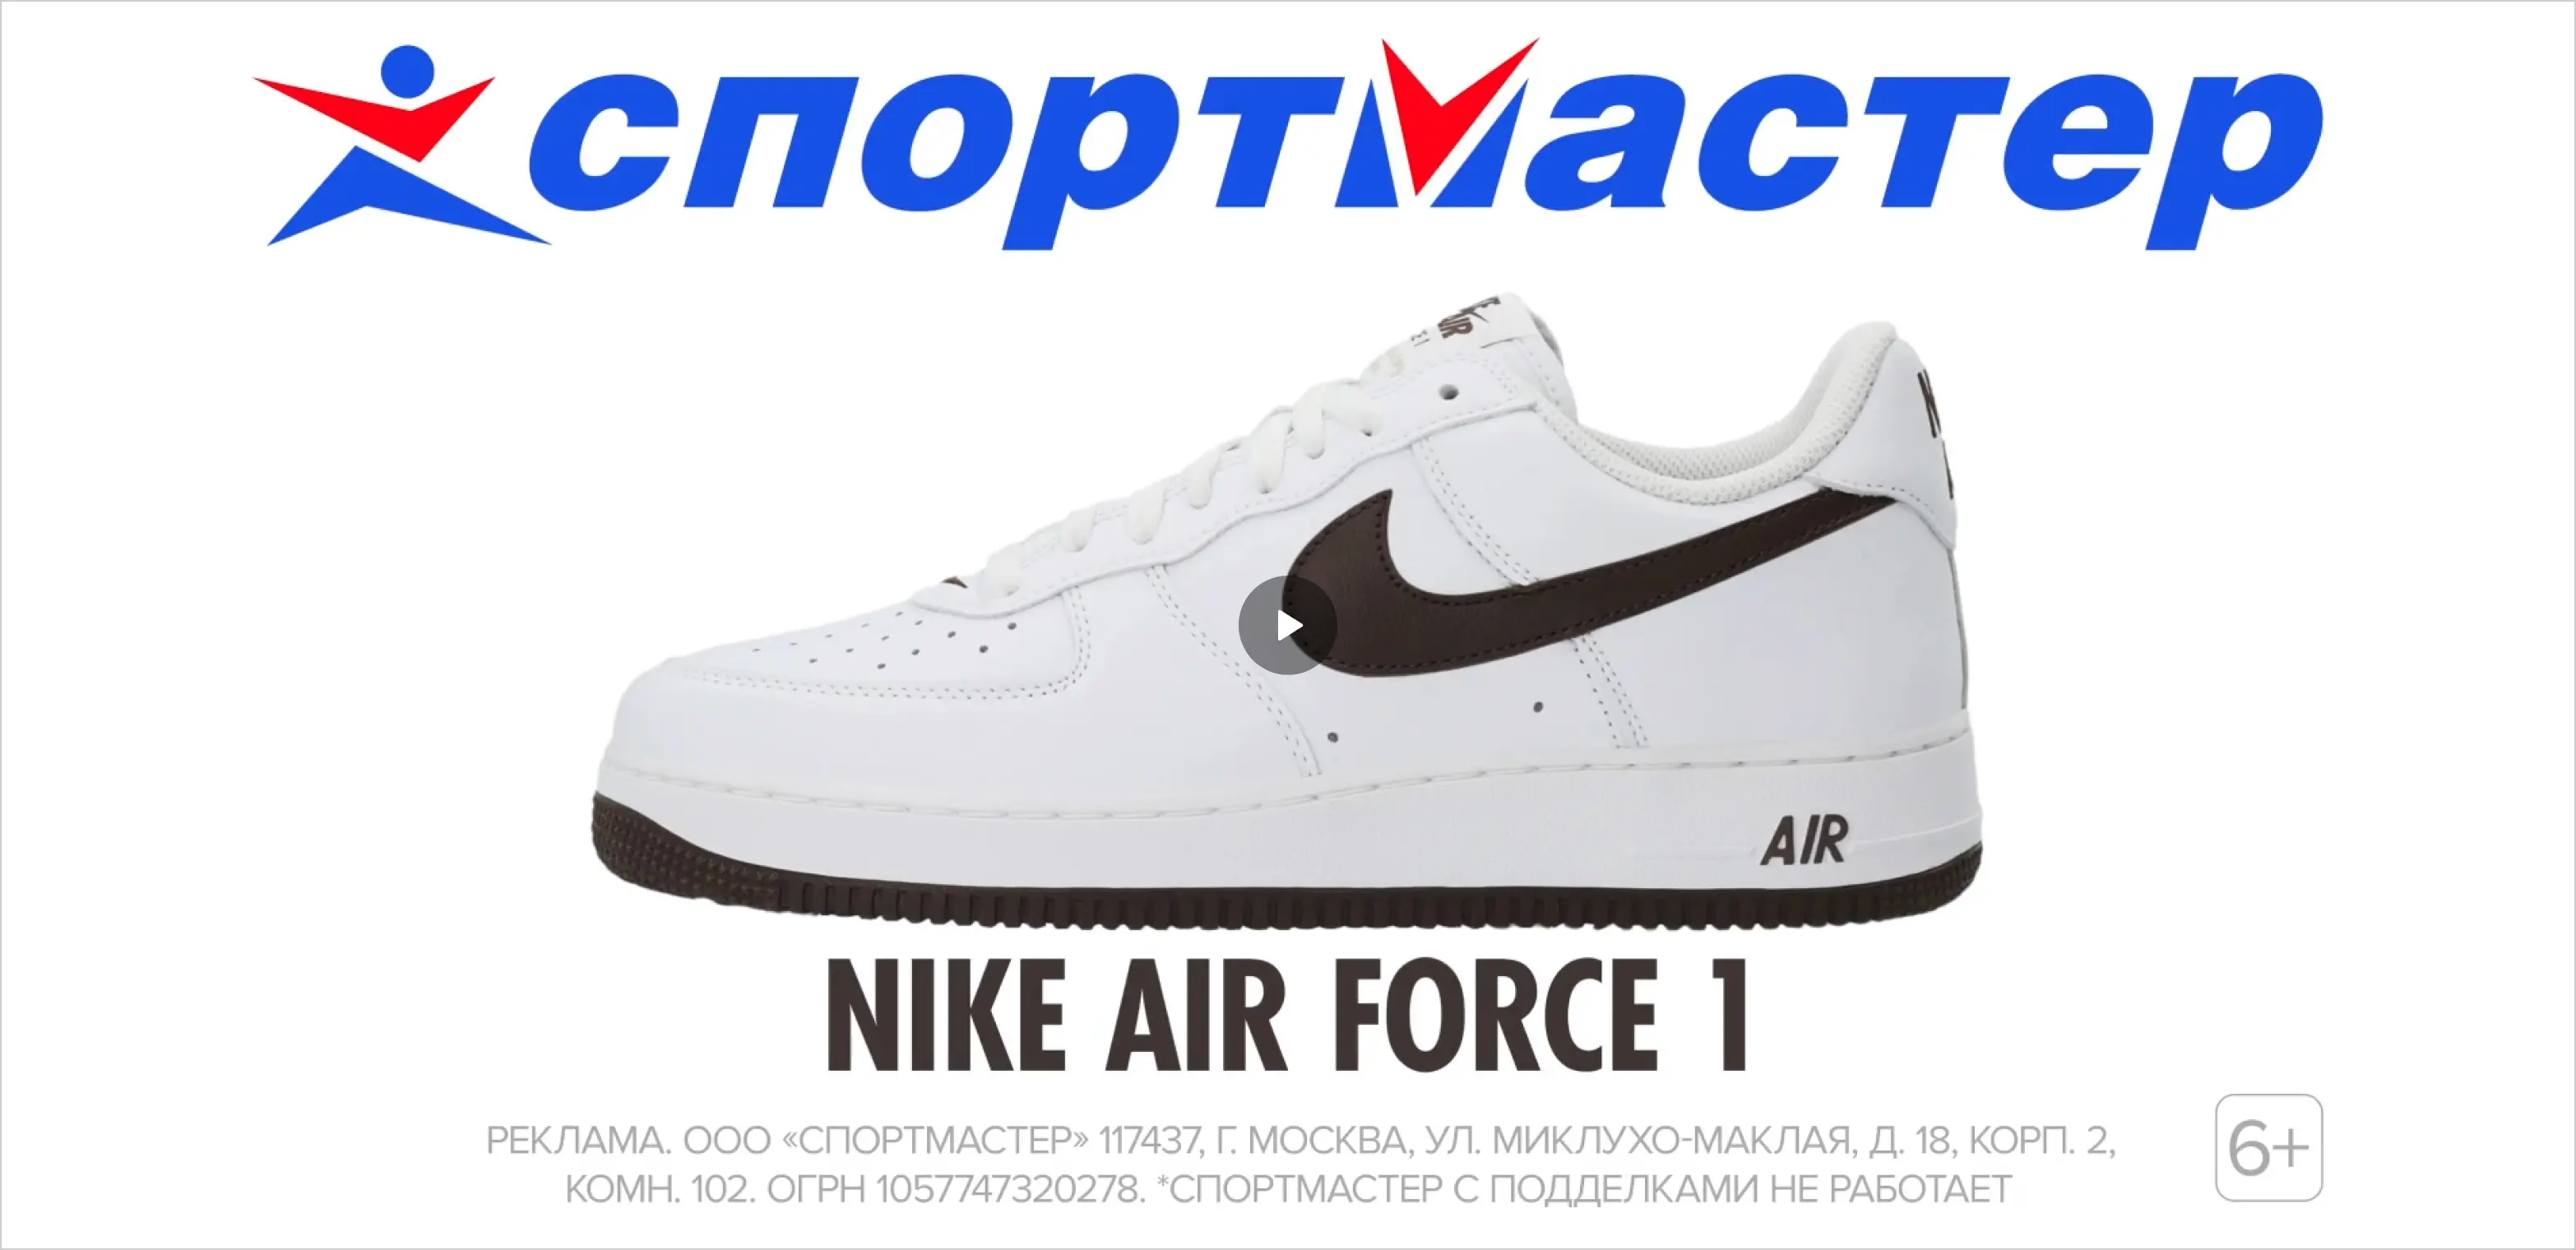 Одежда и обувь Nike — купить с доставкой, цены в интернет-магазине  Спортмастер